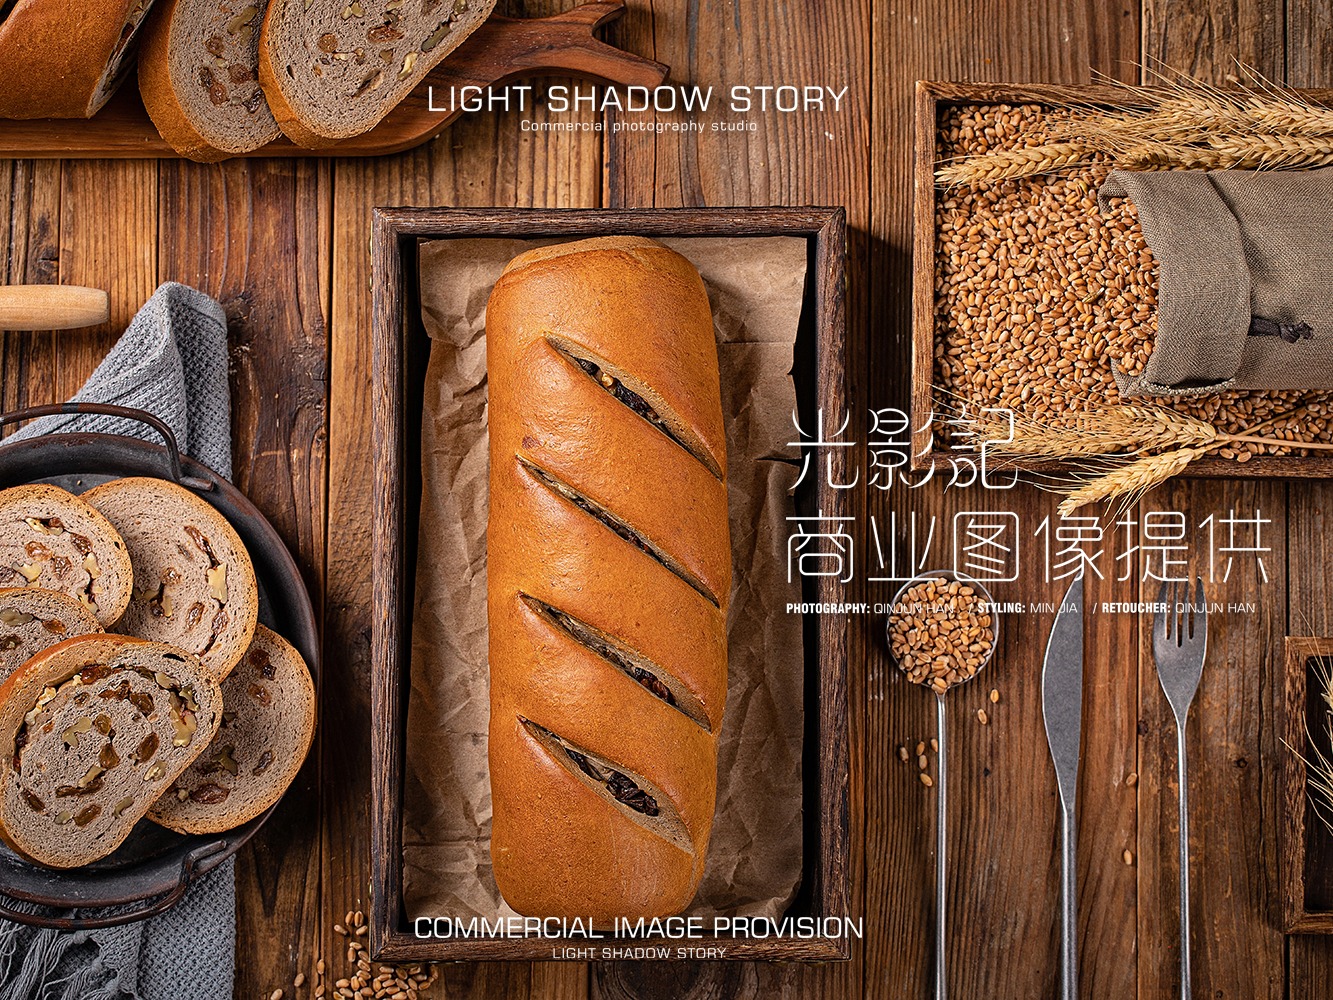 面包,食品,木材,餐食cc0可商用高清图片-千叶网